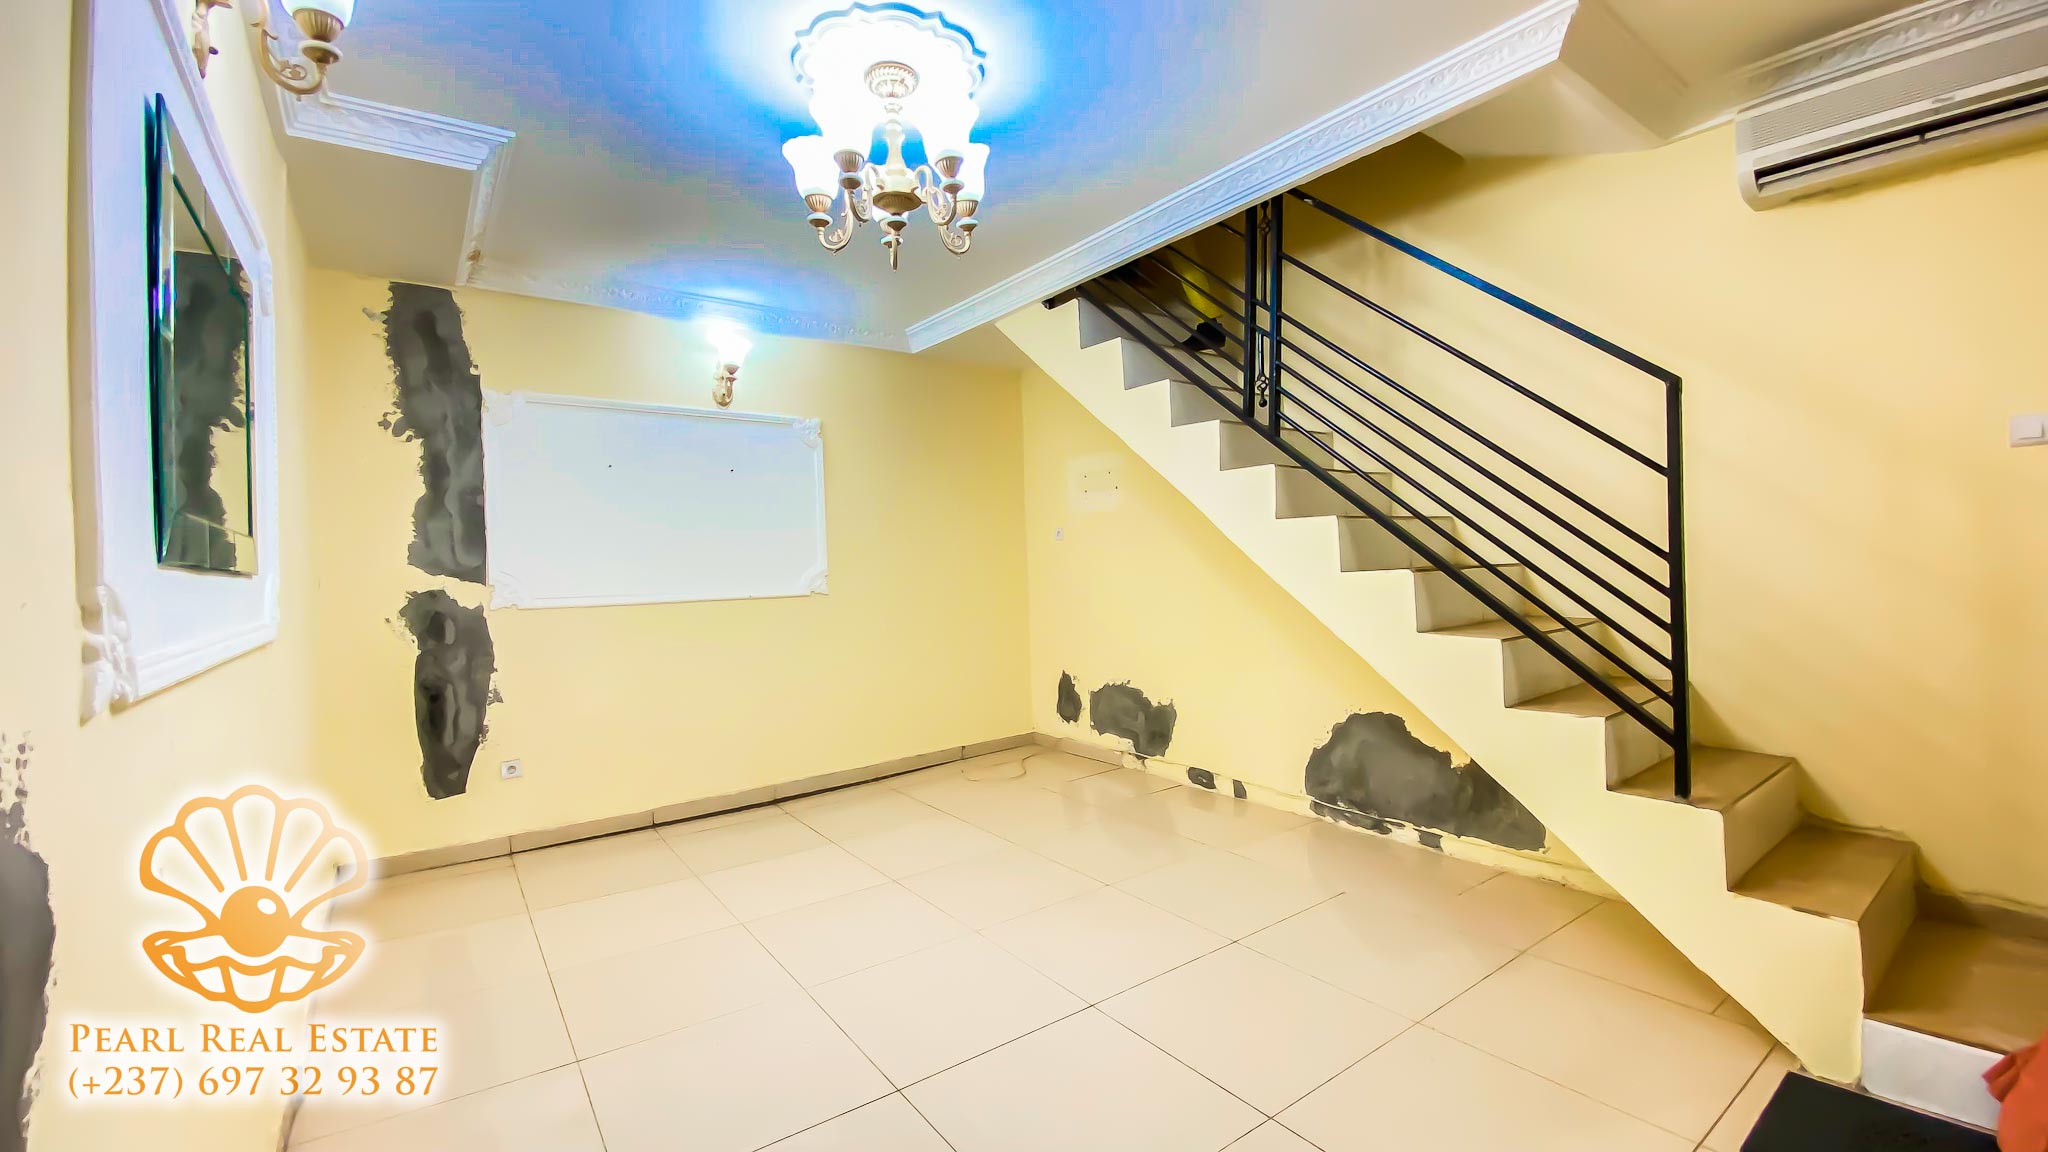 Apartment to rent - Yaoundé, Bastos, Vallée - 1 living room(s), 1 bedroom(s), 1 bathroom(s) - 350 000 FCFA / month